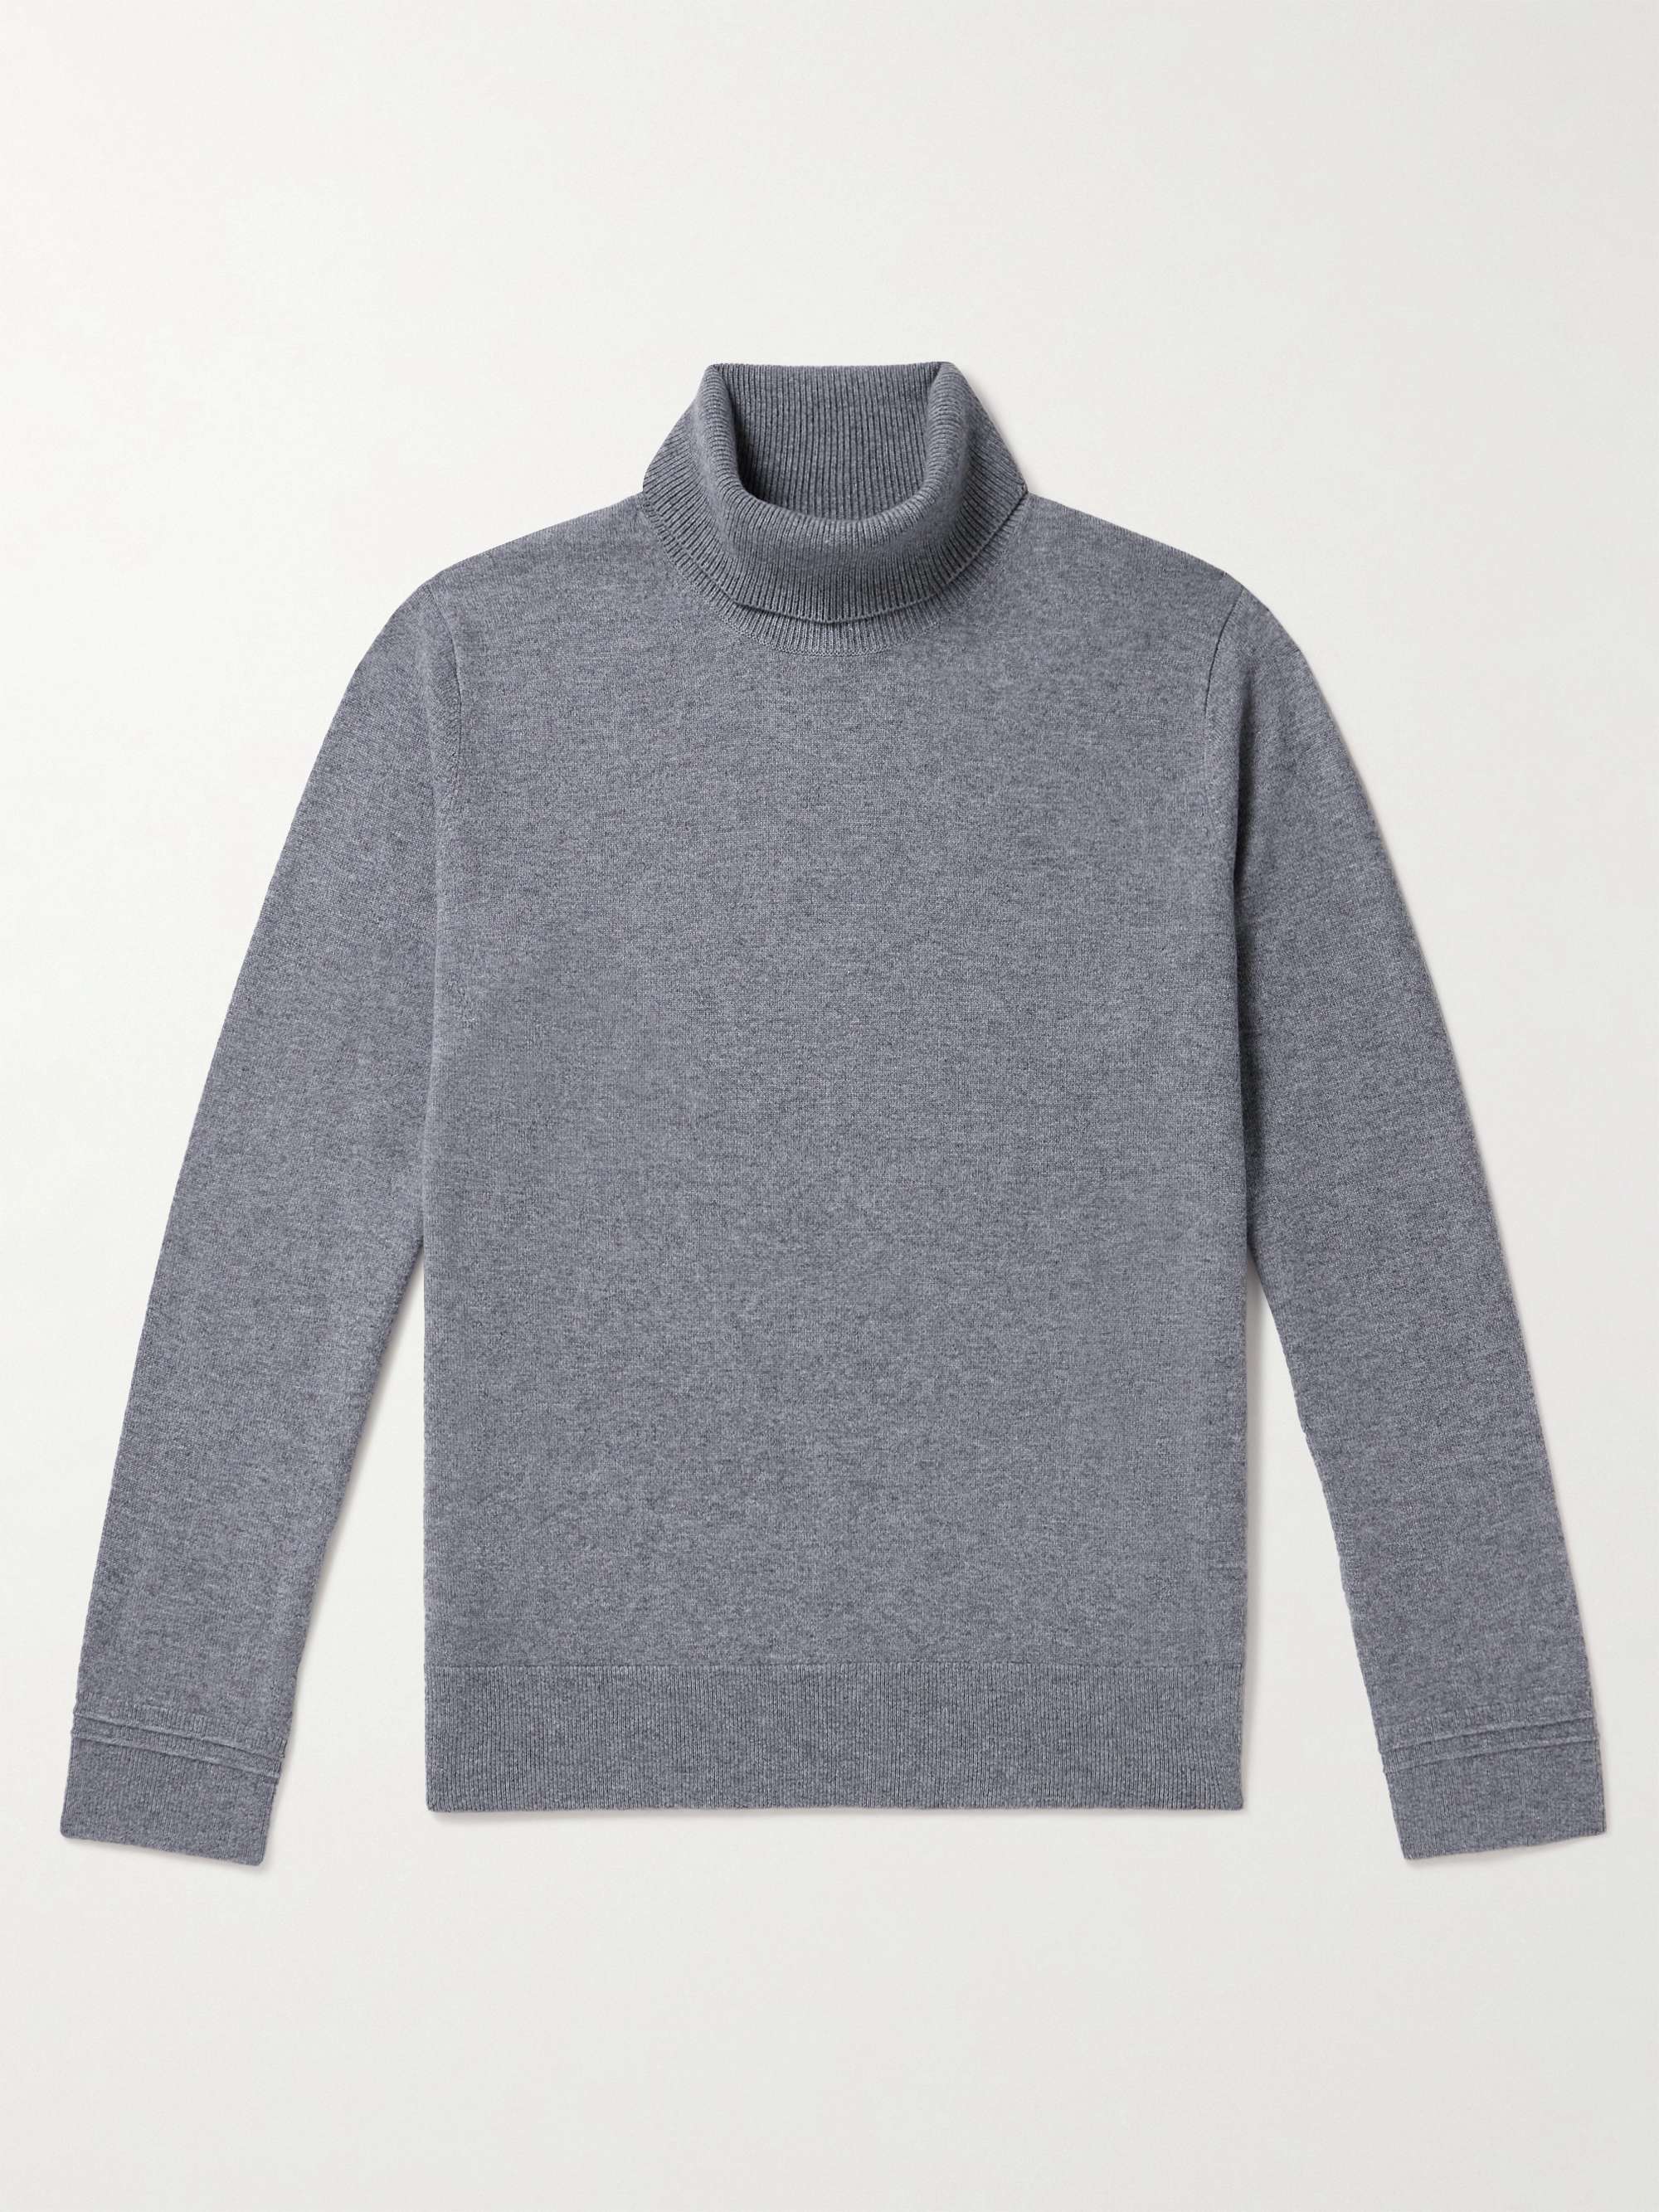 MR P. Cashmere Rollneck Sweater for Men | MR PORTER